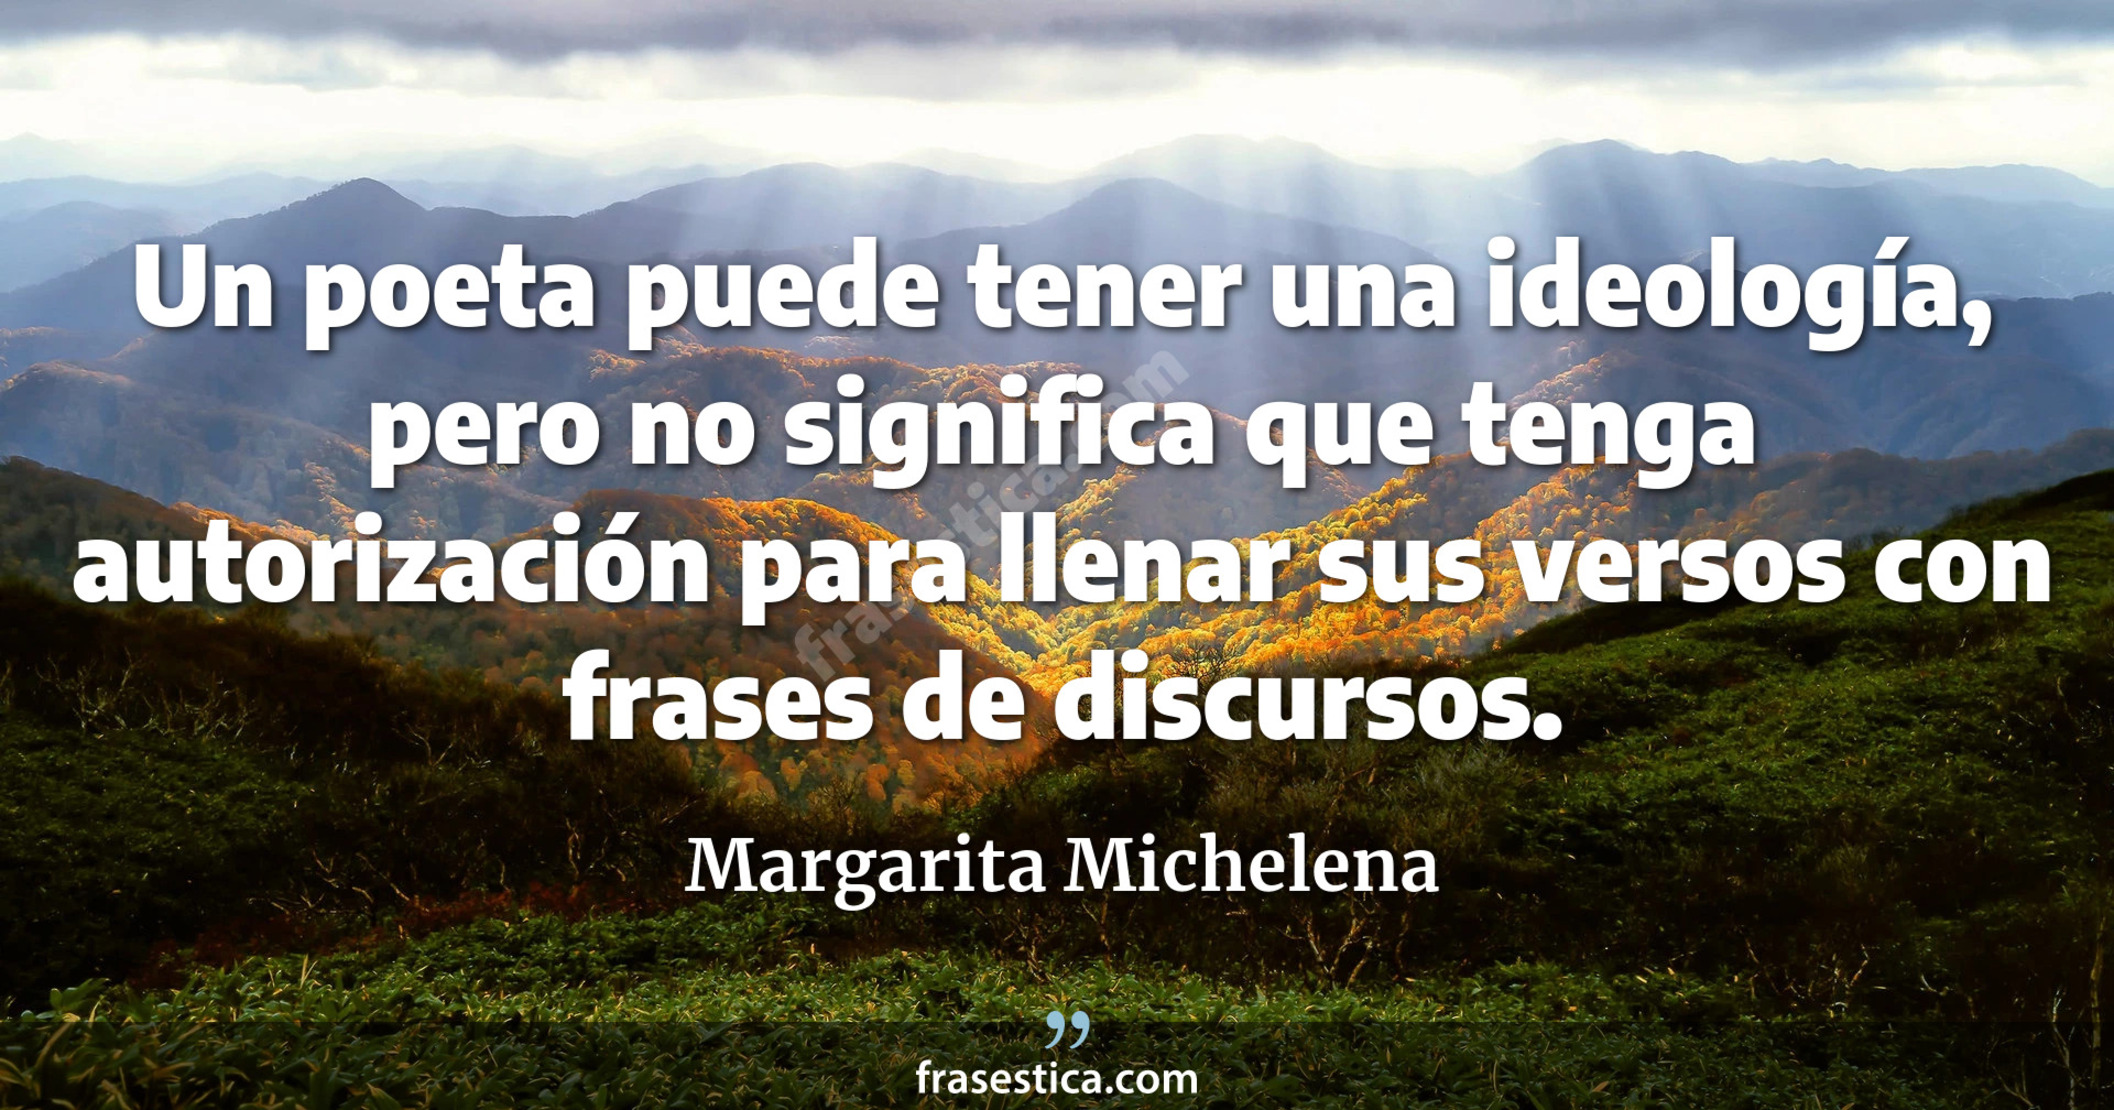 Un poeta puede tener una ideología, pero no significa que tenga autorización para llenar sus versos con frases de discursos. - Margarita Michelena